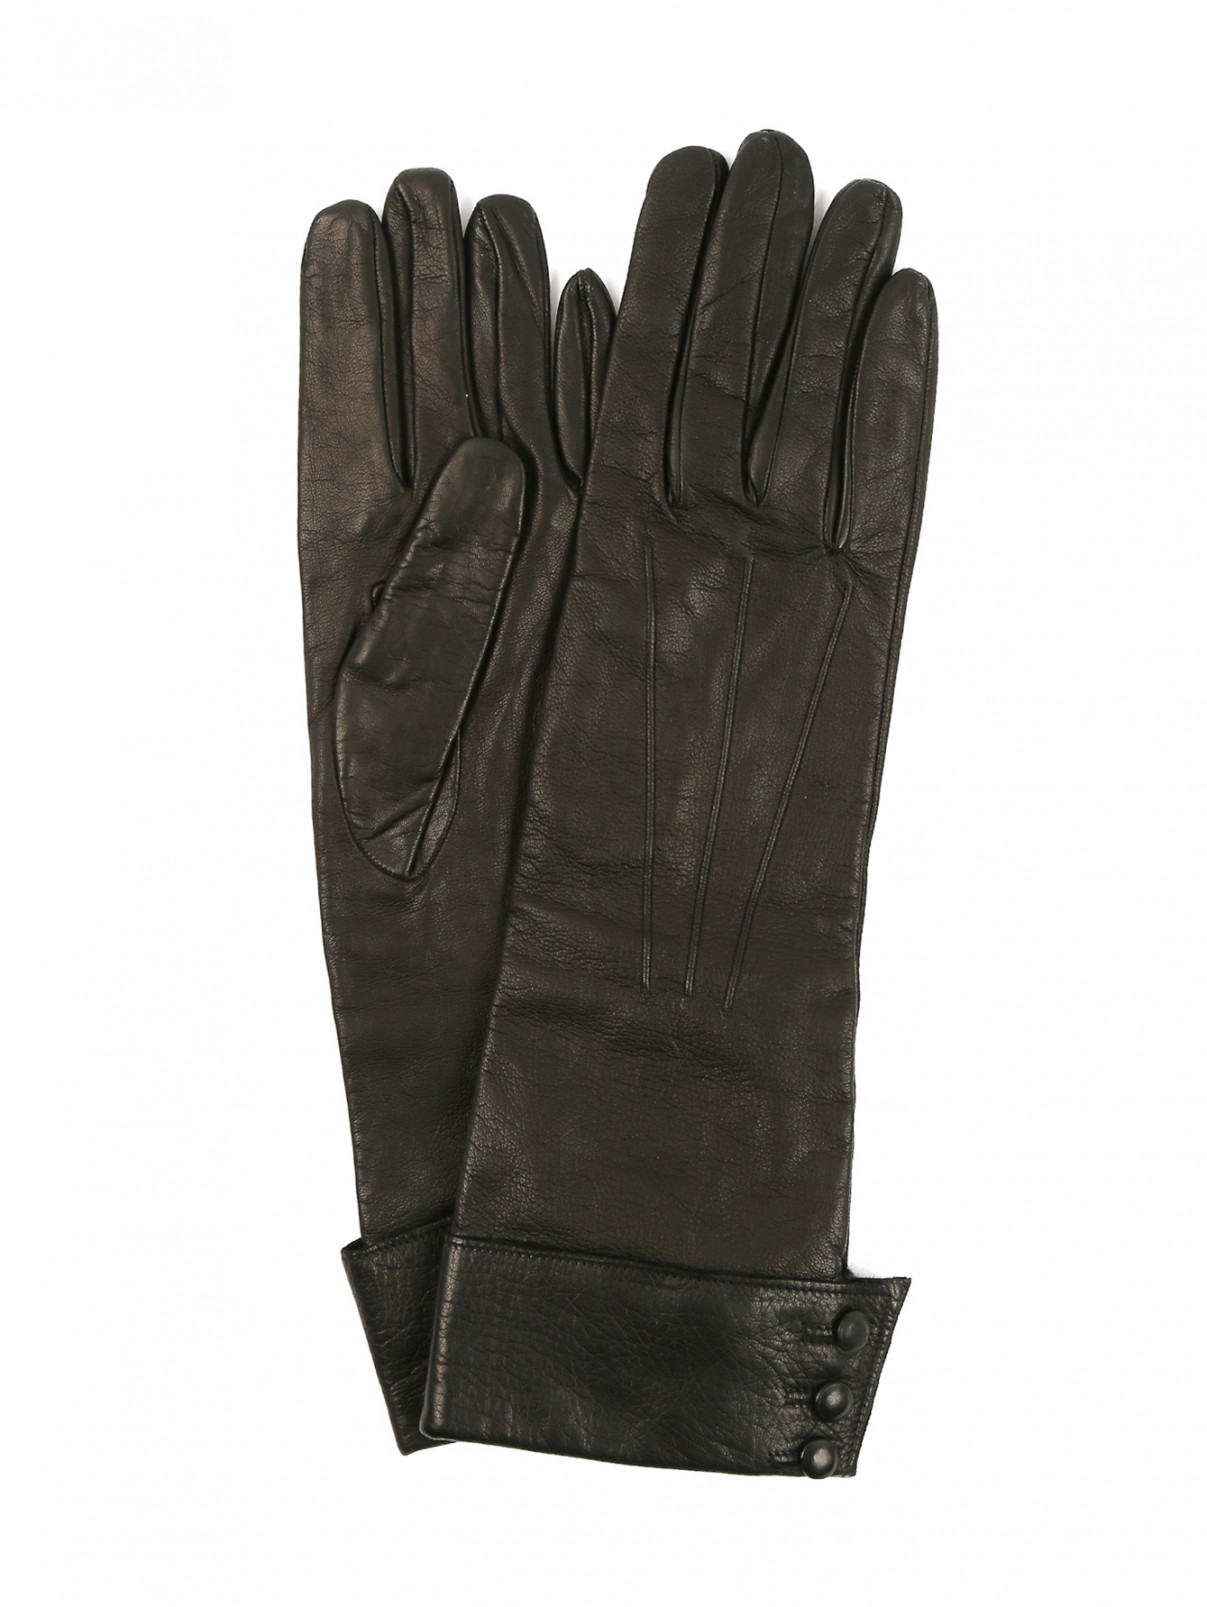 Перчатки из кожи Sermoneta gloves  –  Общий вид  – Цвет:  Коричневый